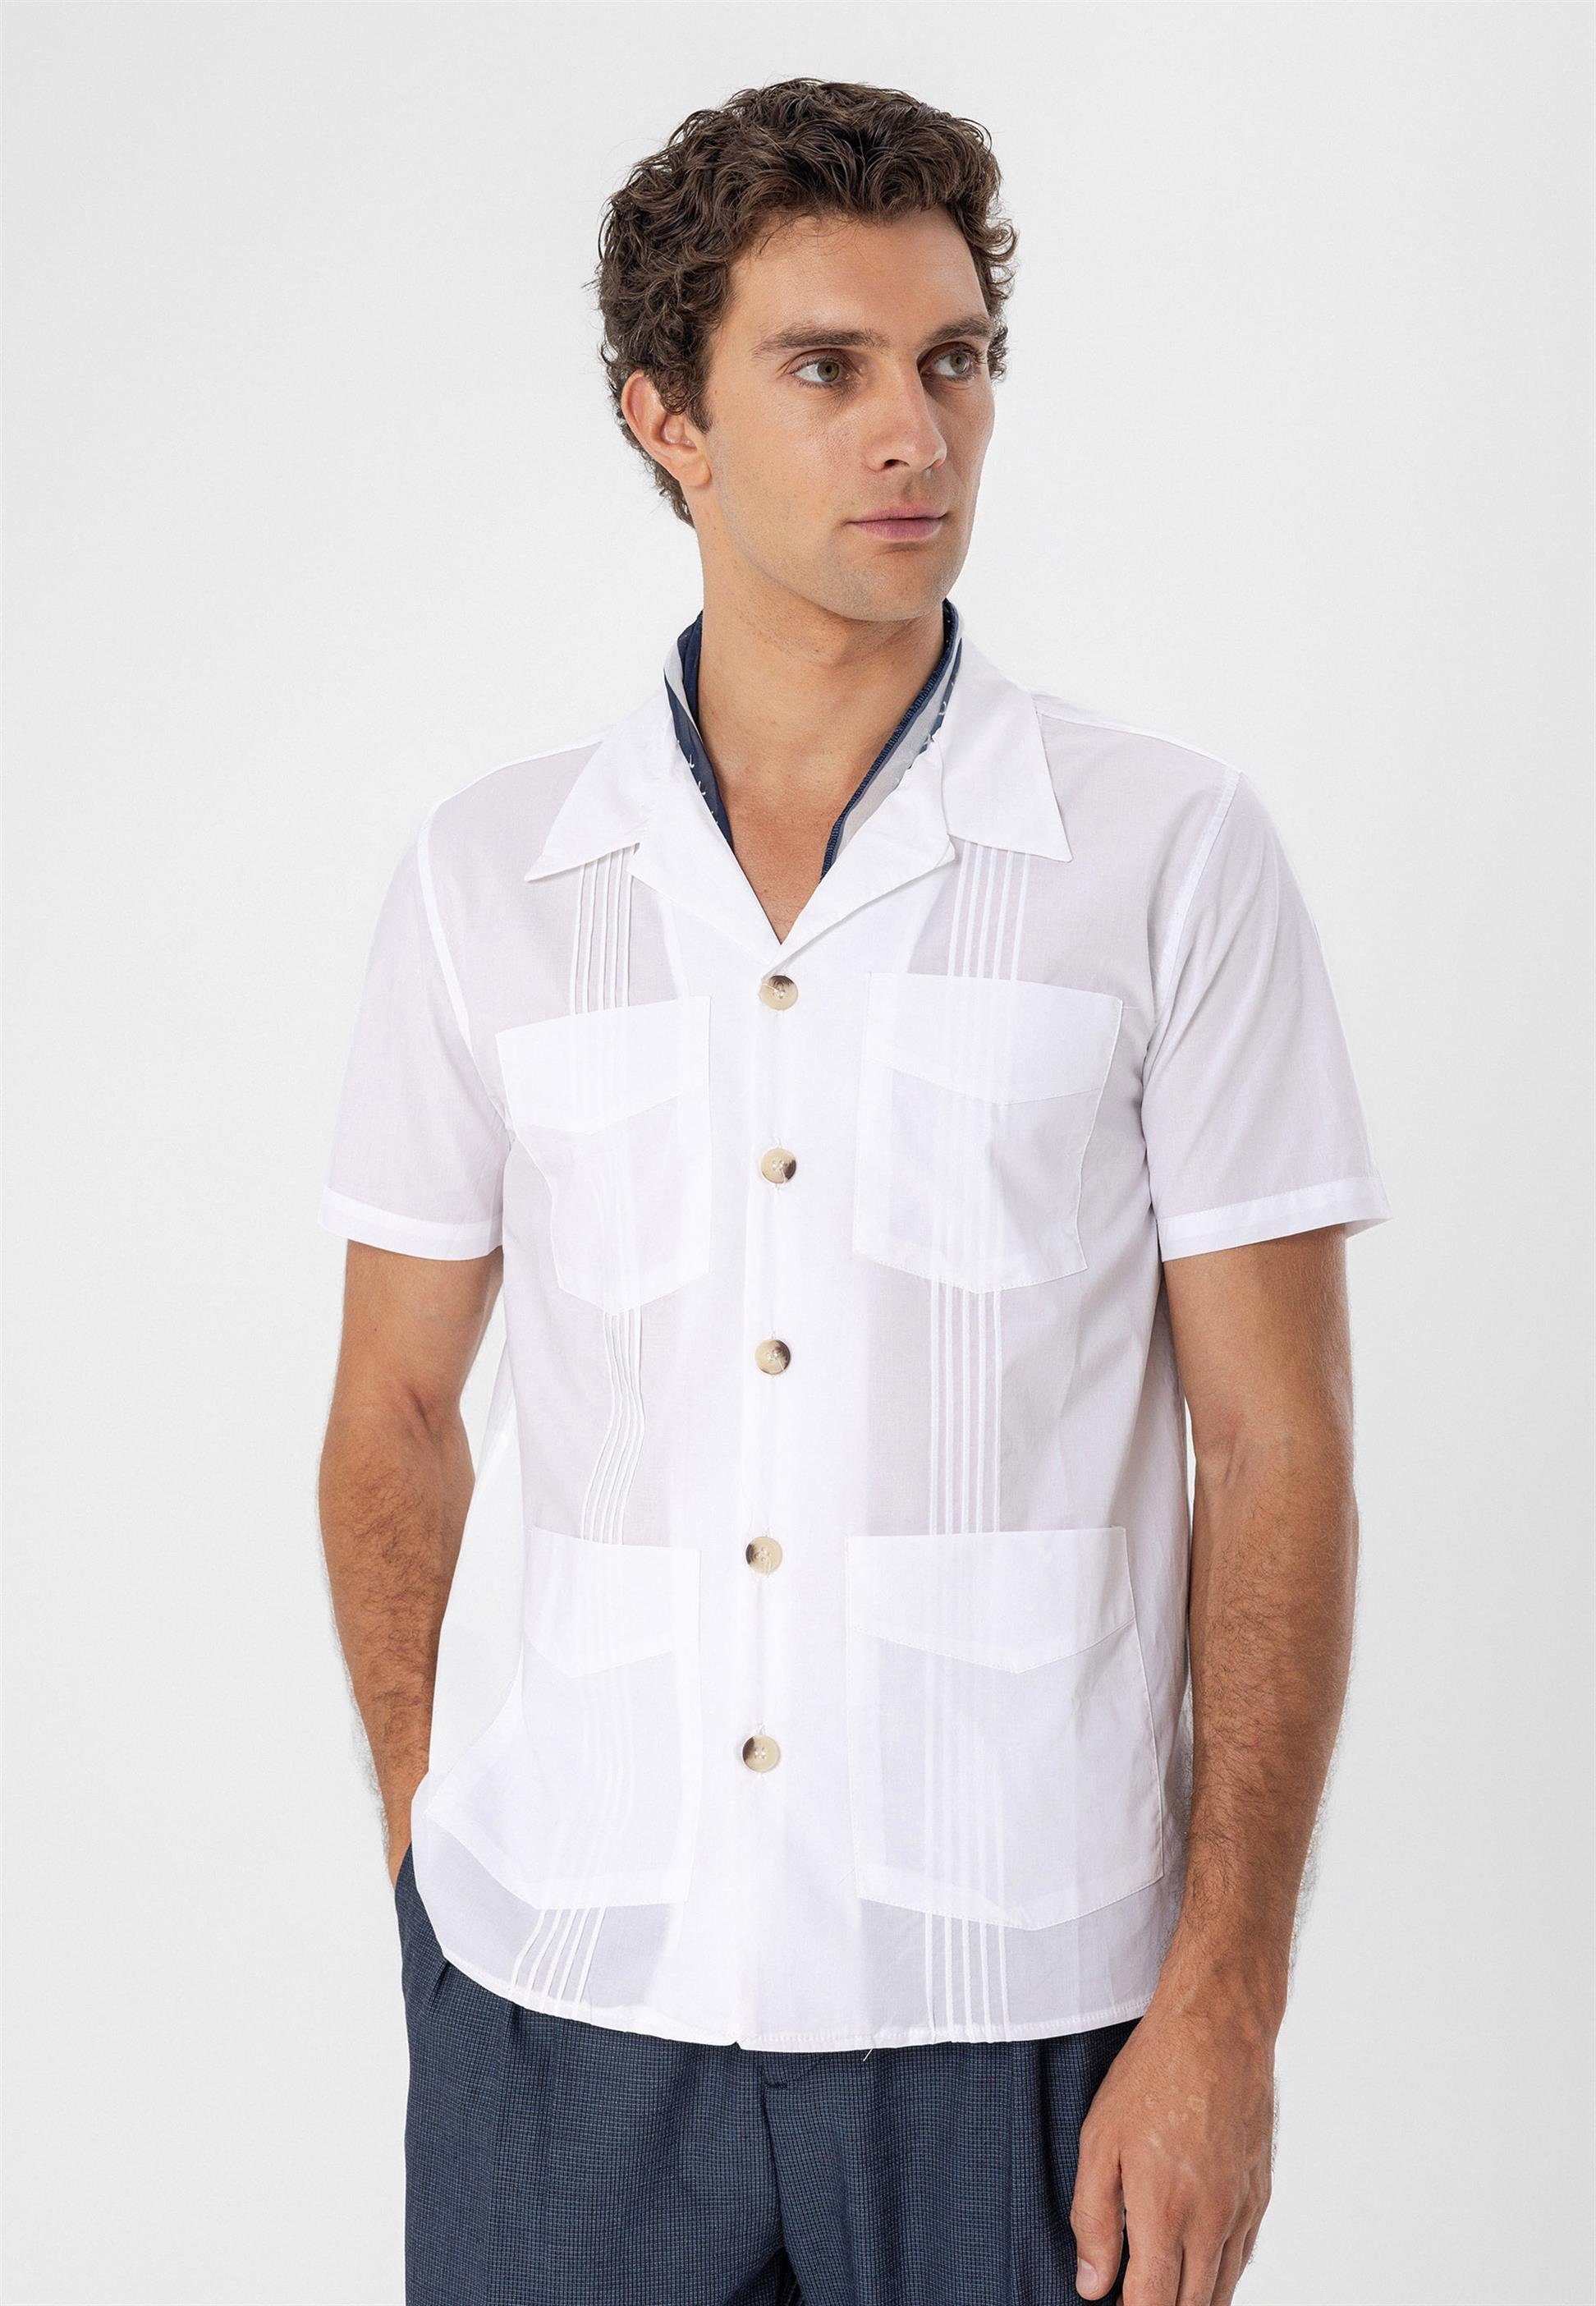 Apaş Collar Men's Safari Shirt